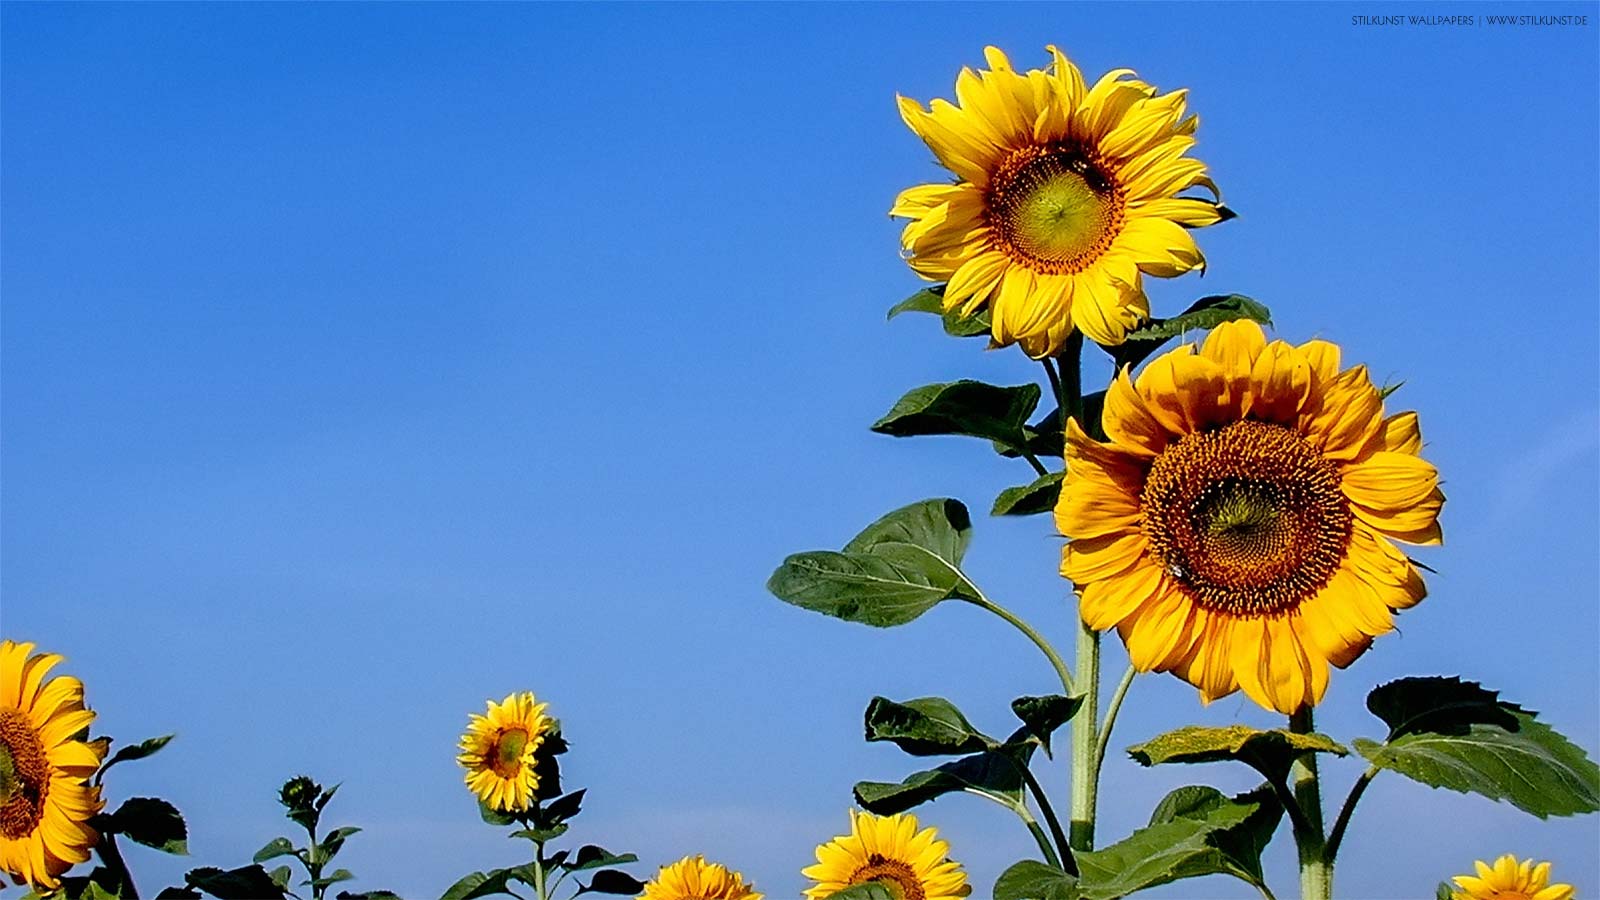 Sonnenblumen auf dem Feld | 1600 x 900px | Bild: ©by Sabrina | Reiner | www.stilkunst.de | Lizenz: CC BY-SA